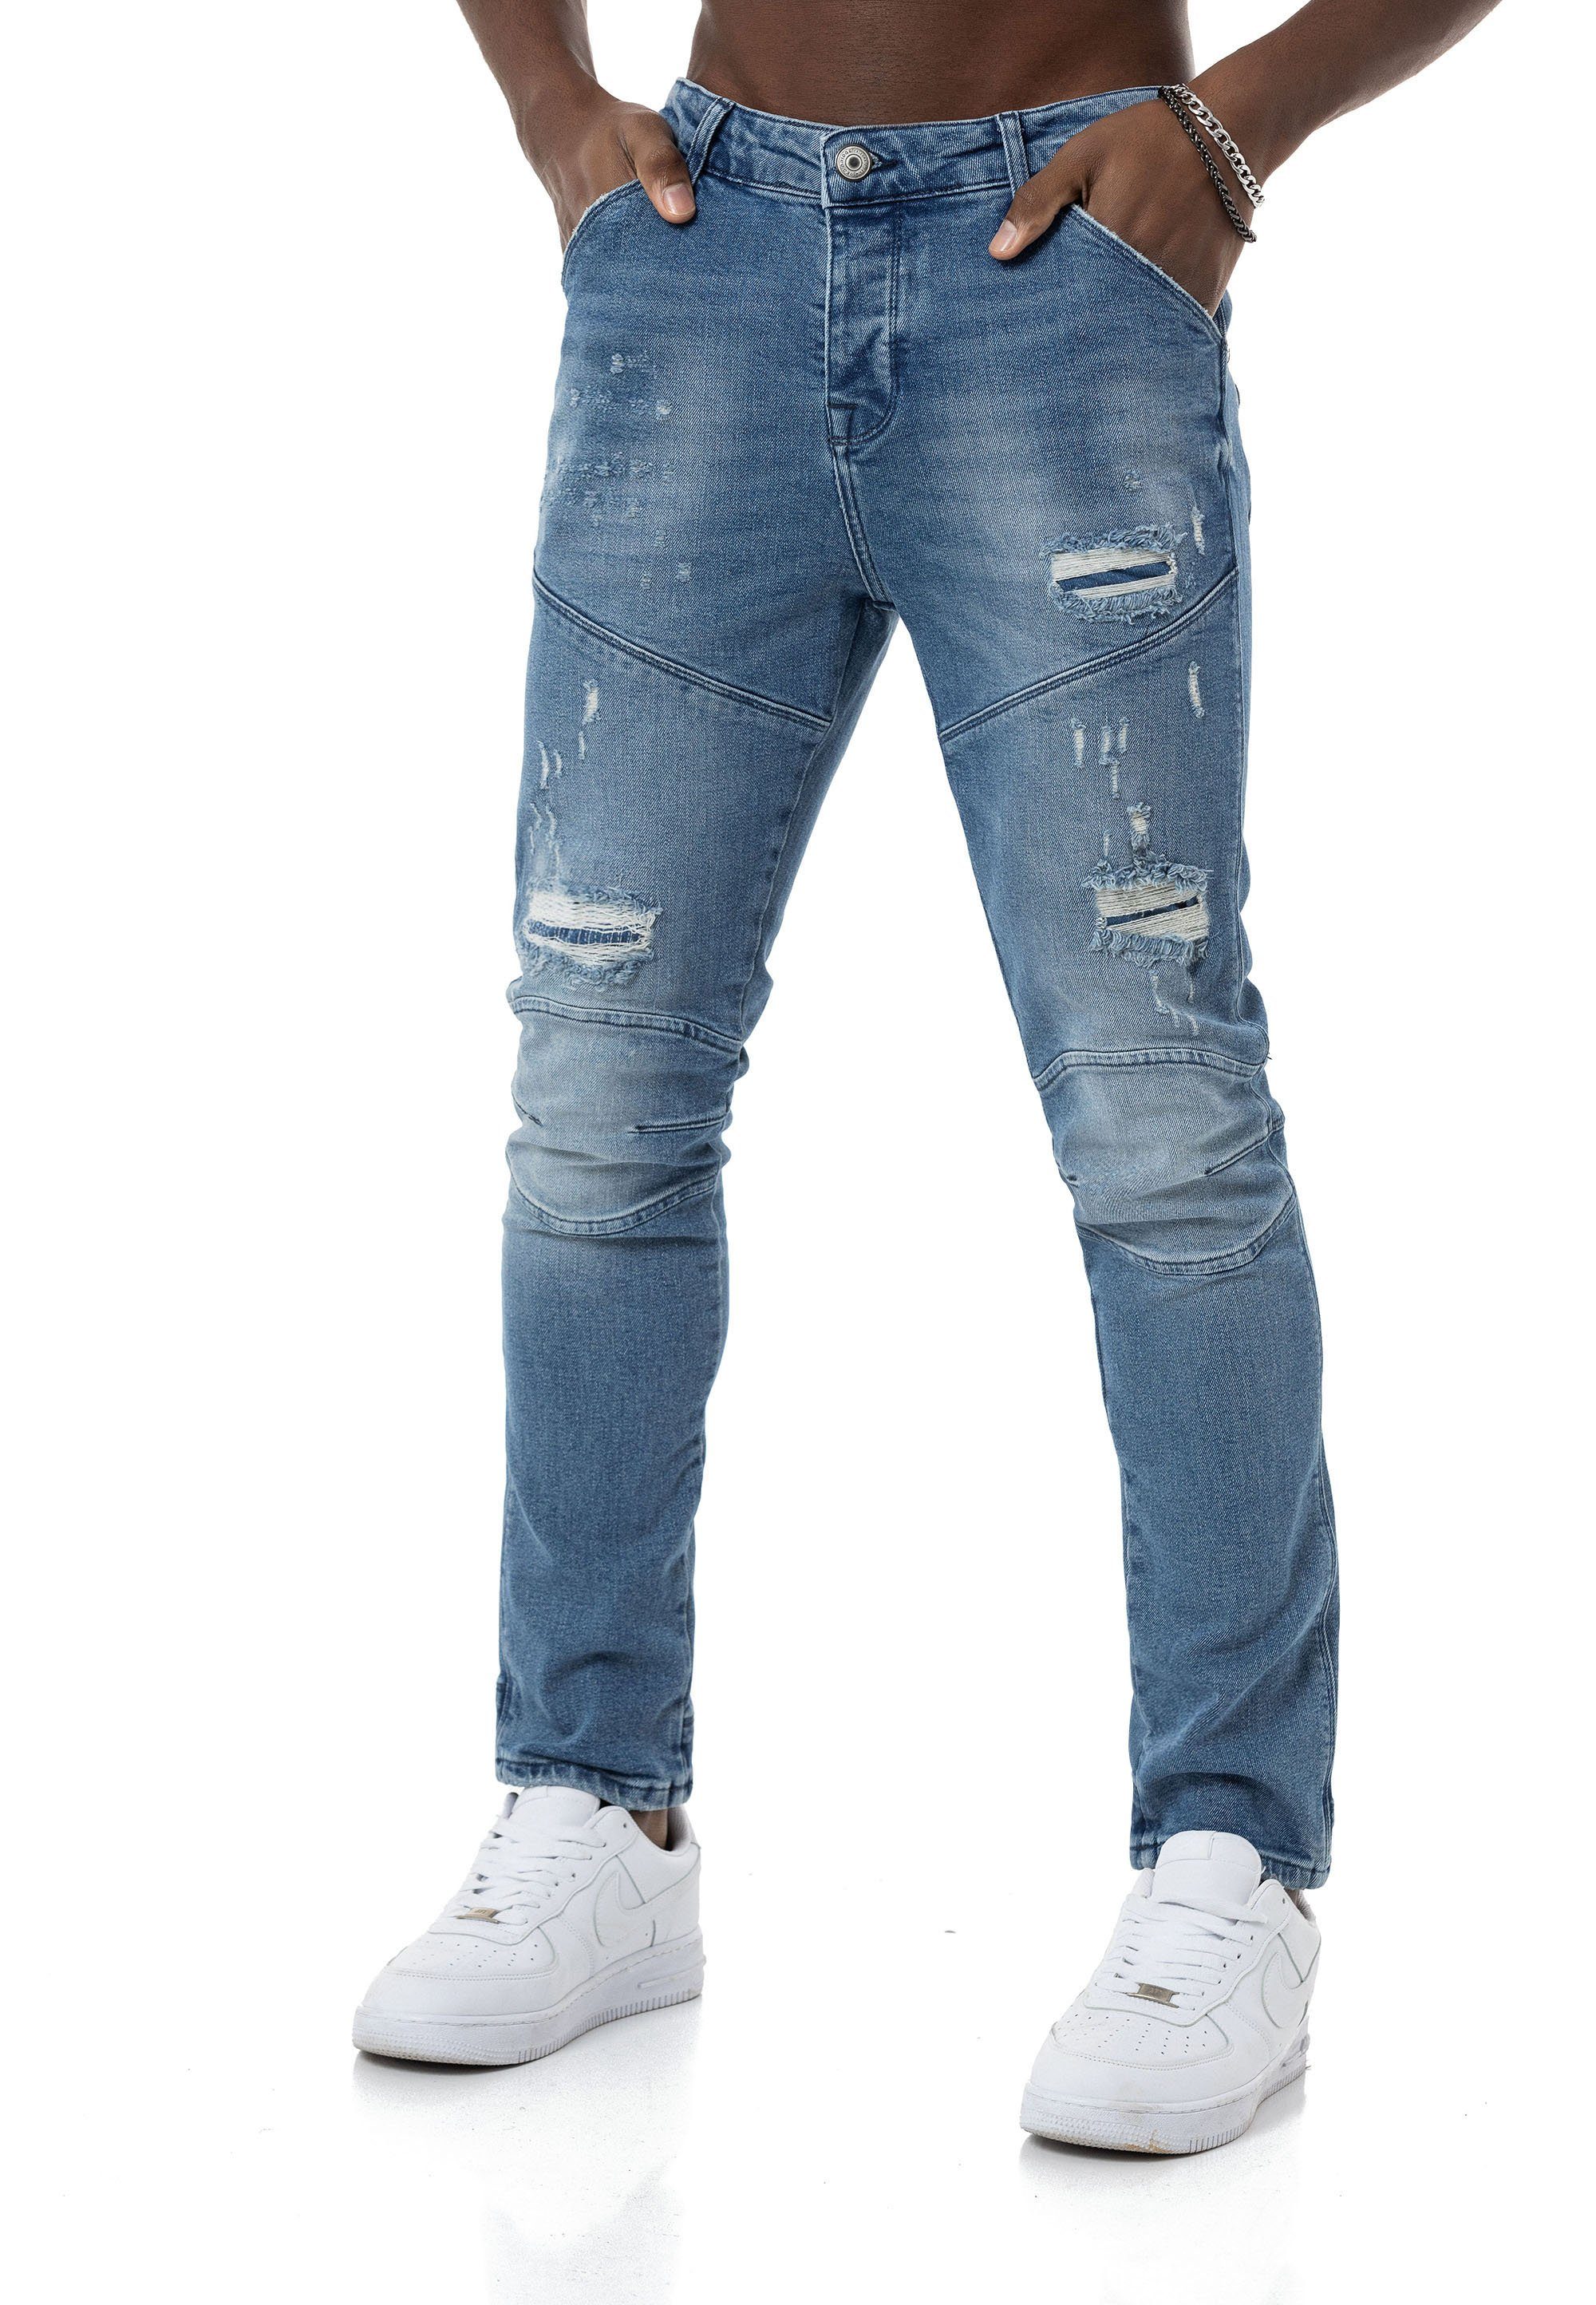 RedBridge Destroyed-Jeans Red Bridge Herren Jeans Hose Denim Pants Blau W32 L34 5-Pocket-Style